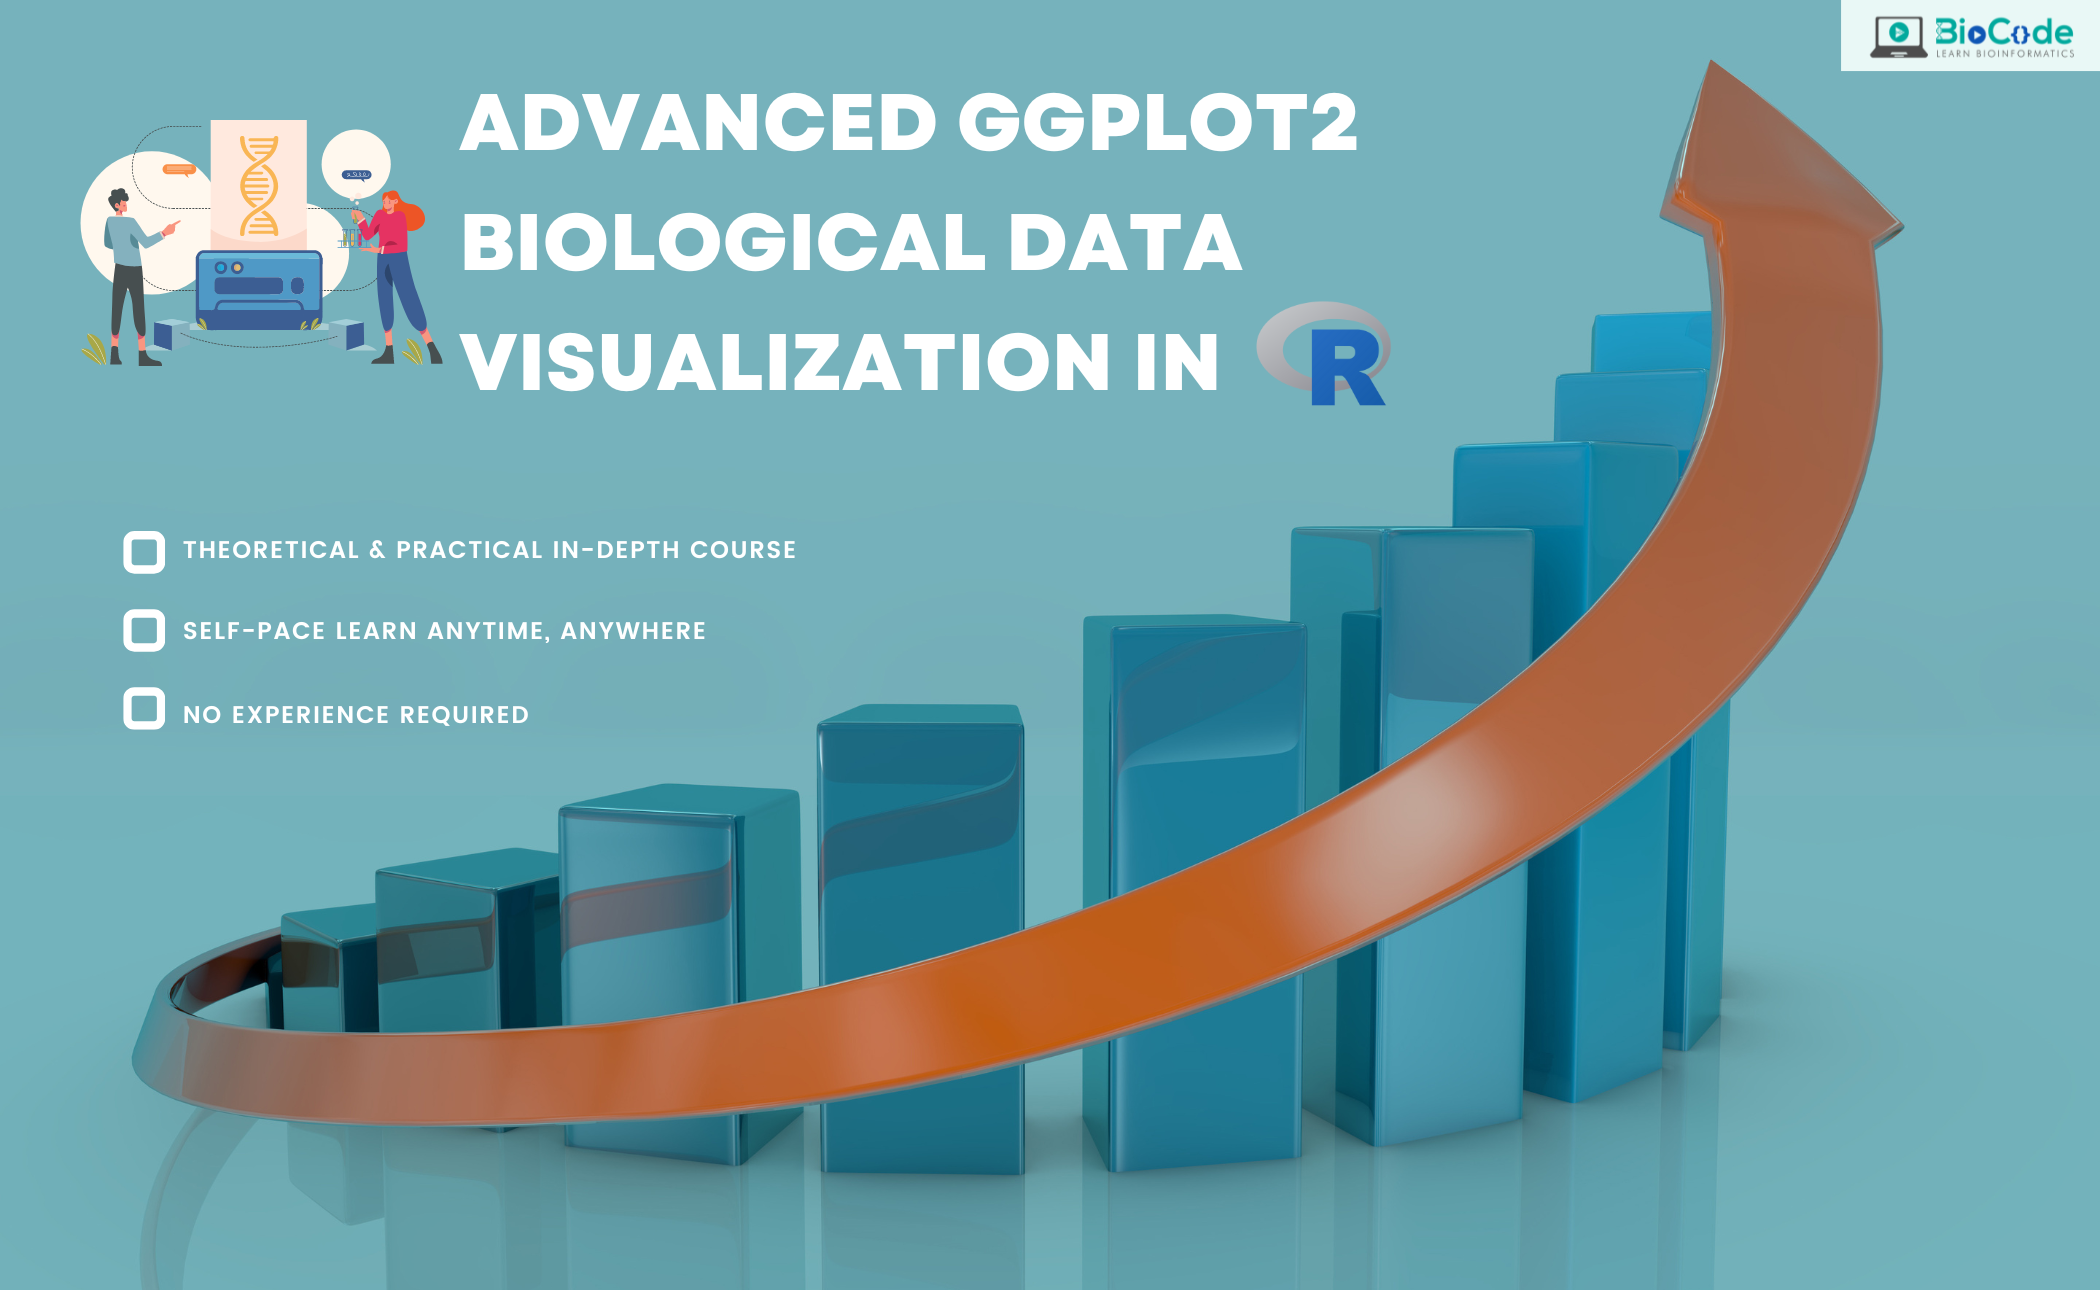 Advanced ggplot2 Biological Data Visualization in R